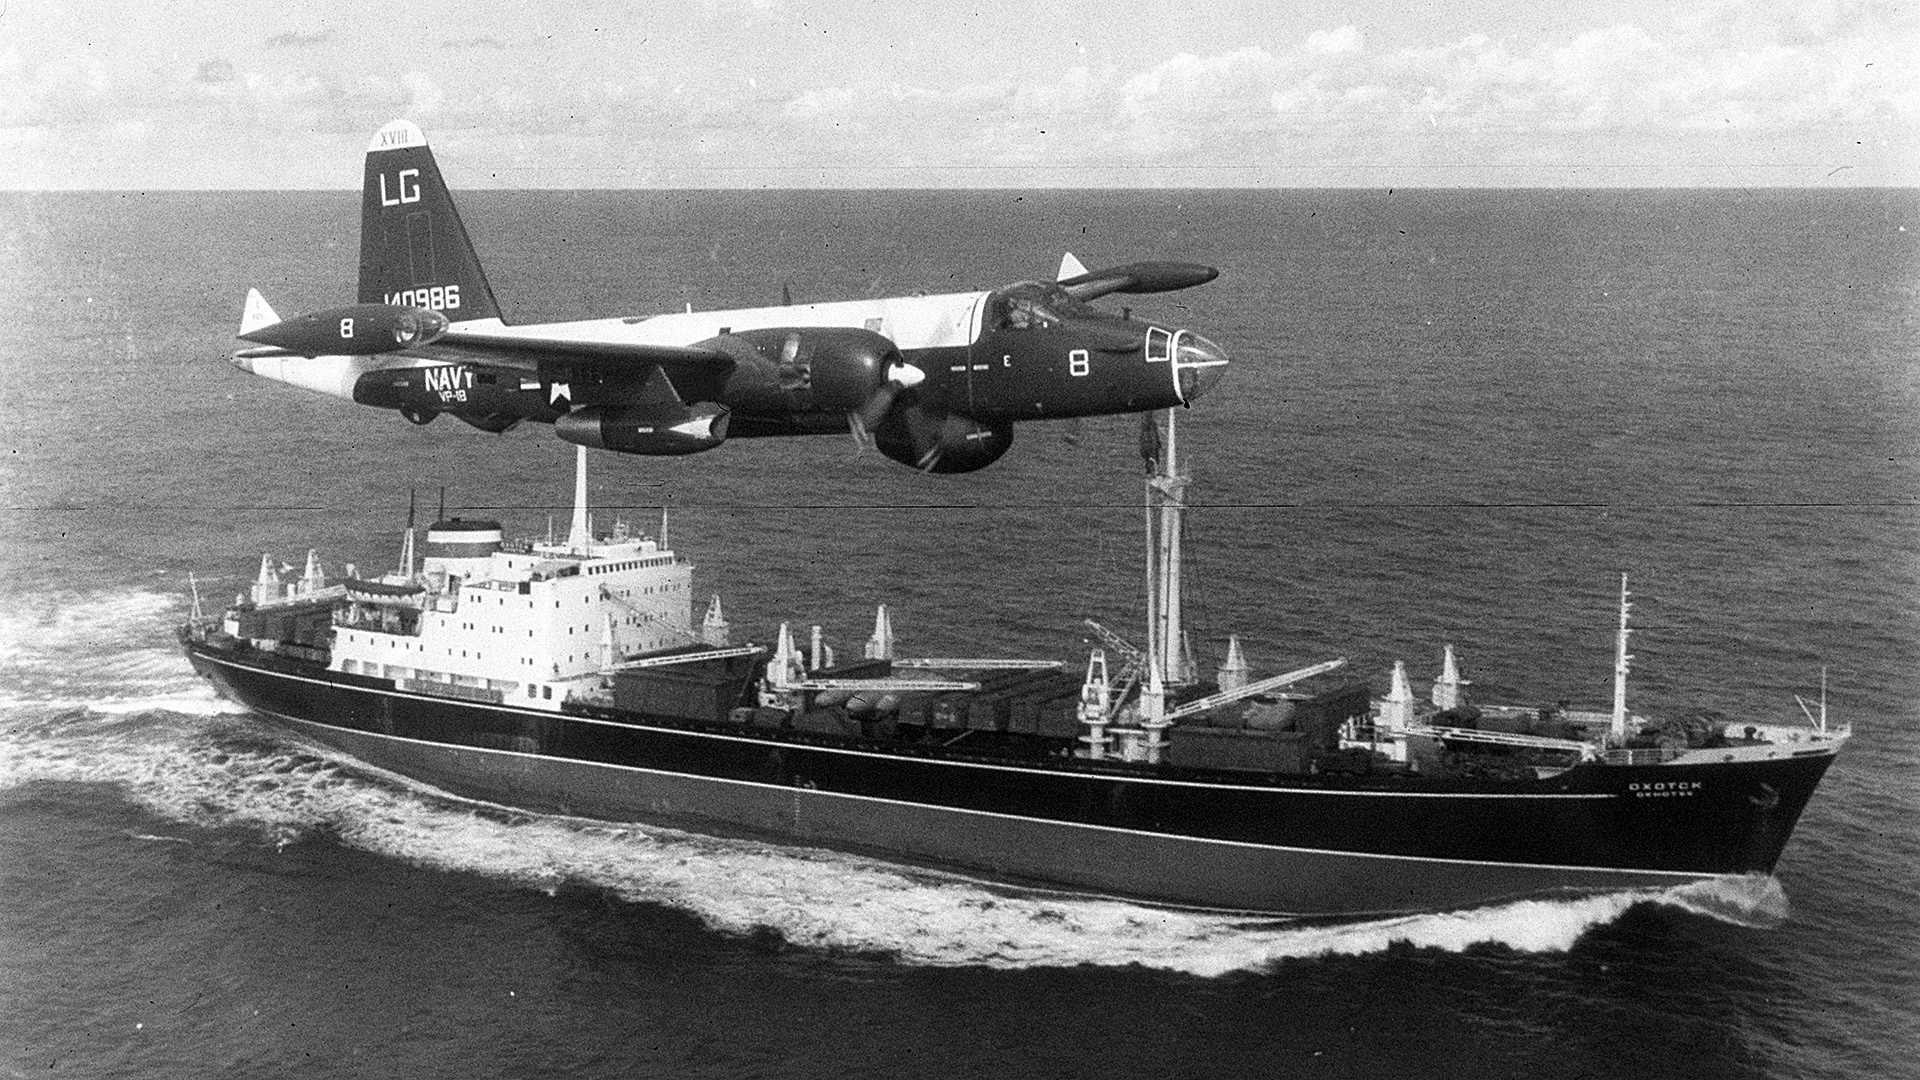 Un avion américain survole un navire soviétique pendant la crise des missiles de Cuba.